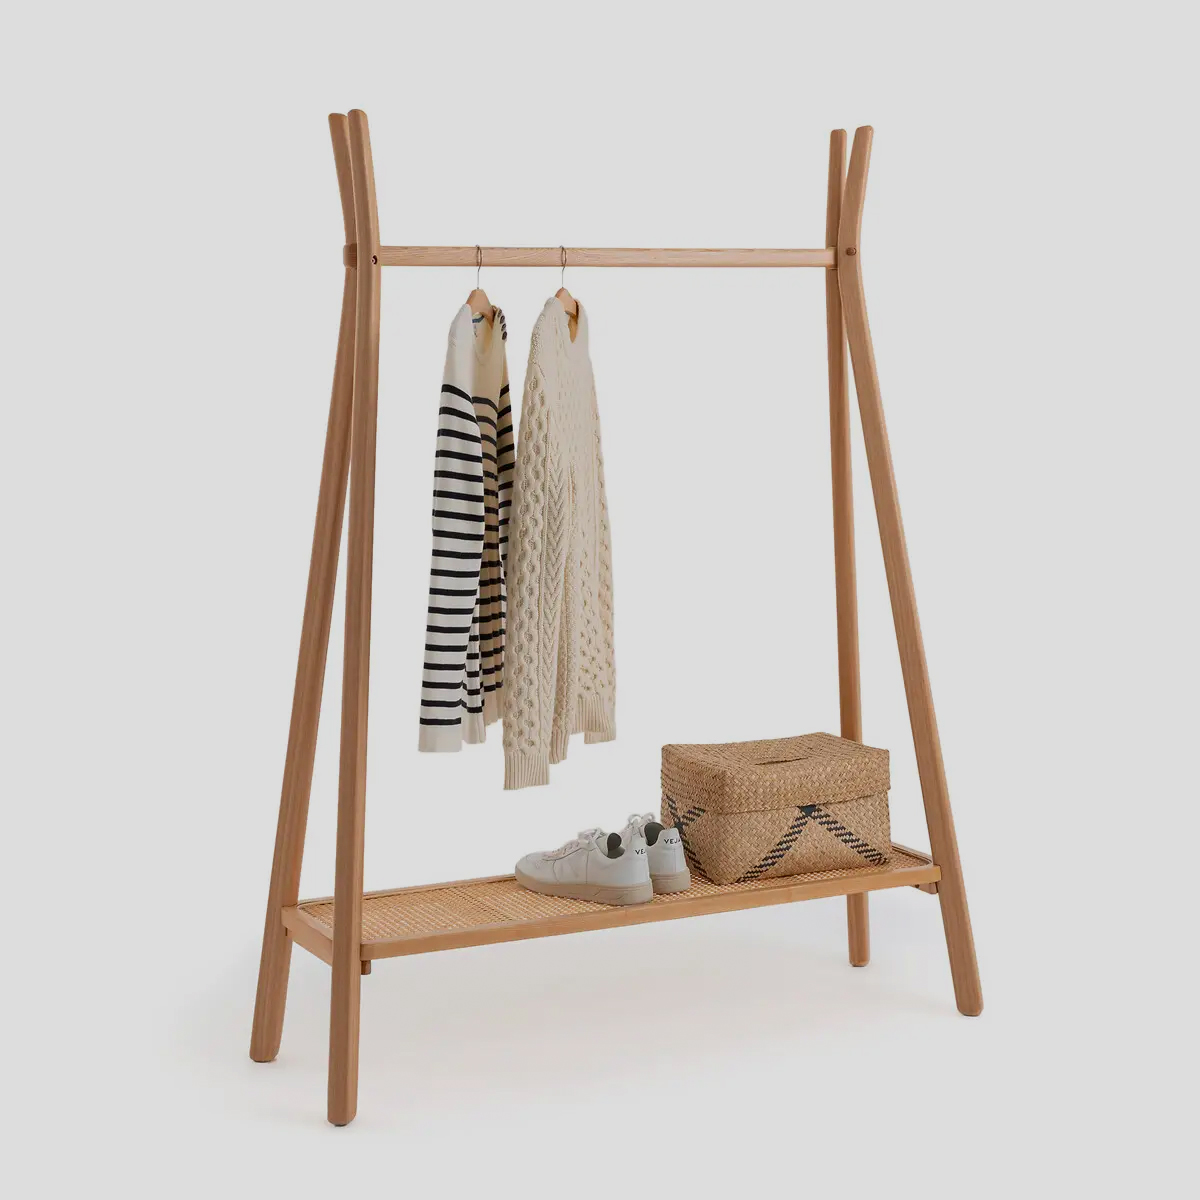 Deze multifunctionele houten kledingrek biedt genoeg ruimte voor kleding, schoenen, jassen en tassen.